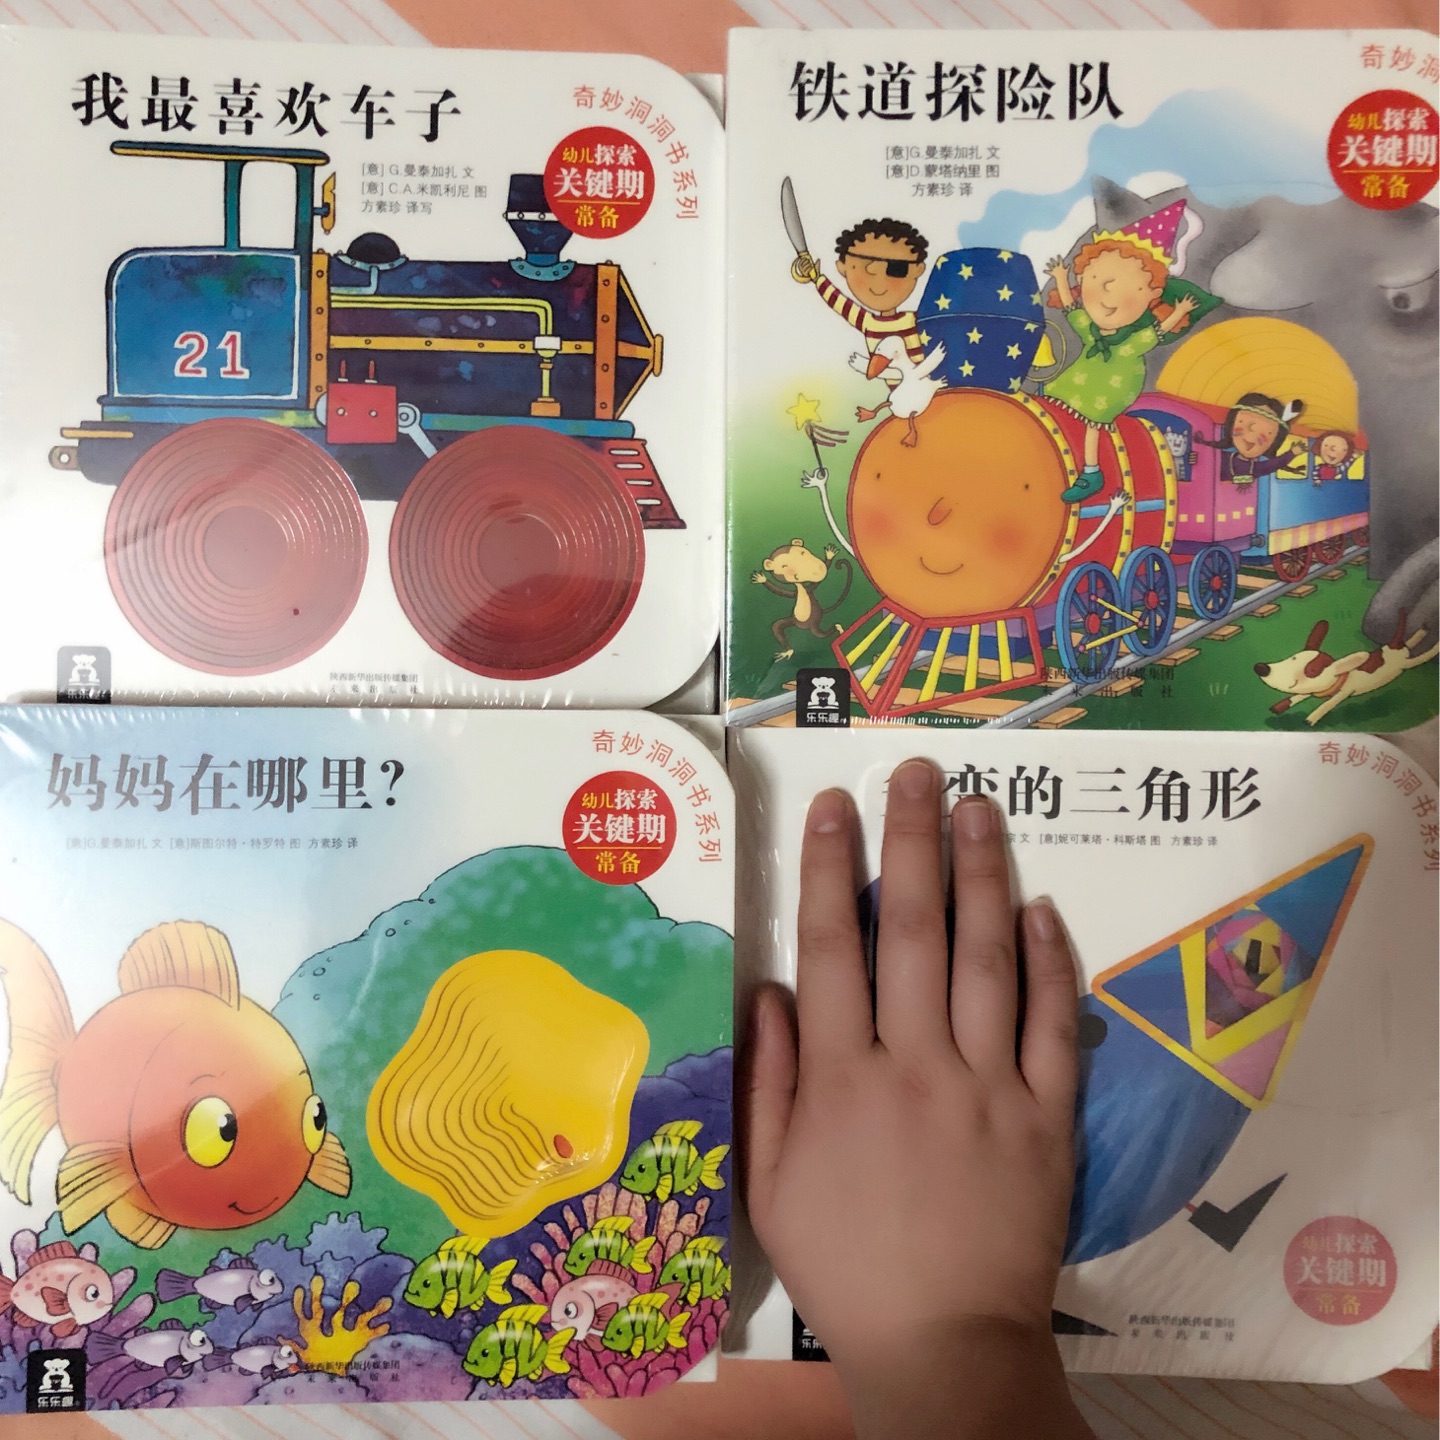 一次性购入四辑 给宝宝囤个书本以为洞洞书应该挺小巧 适合孩子拿取 没想到是这么大一本 合着的时候就有成人2个手掌的大小 而且一本也挺厚 大概一个手指头宽的厚度总体来说还是很满意